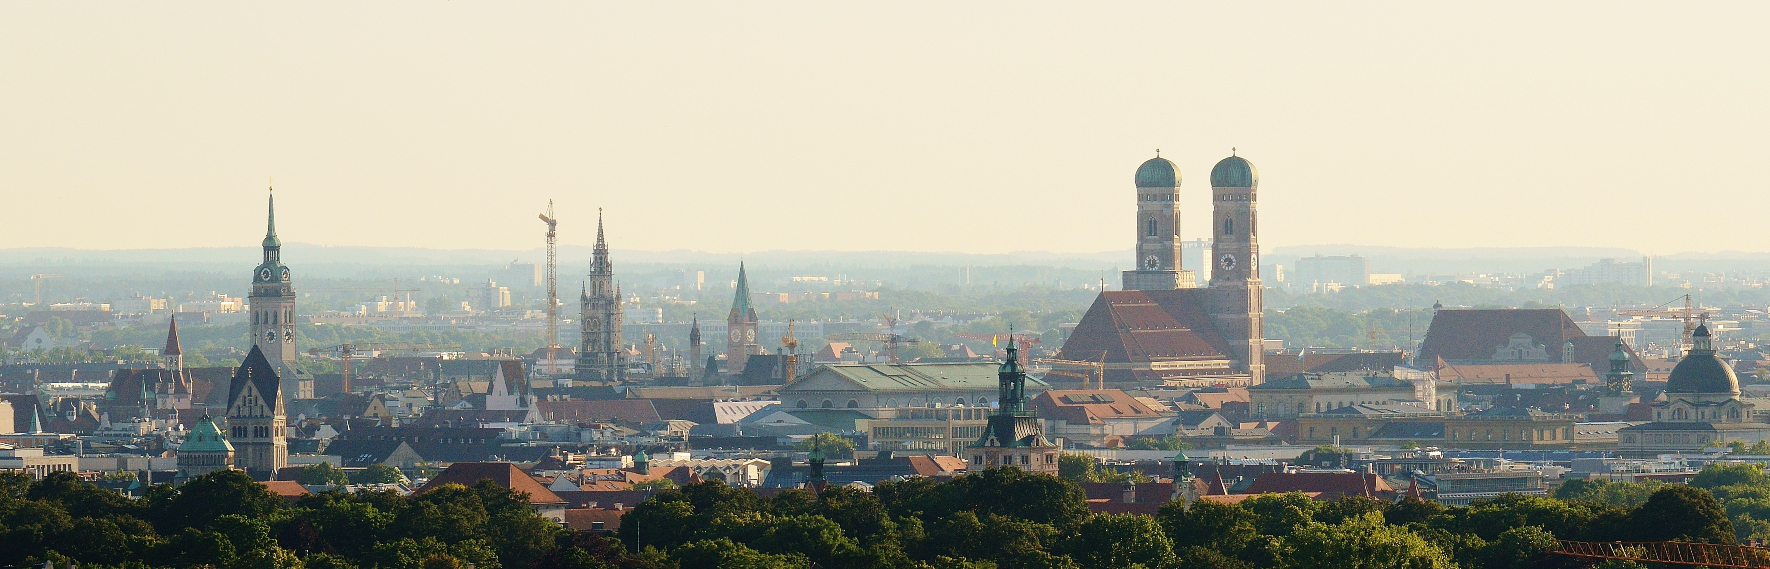 uitzicht over de Duitse stad München